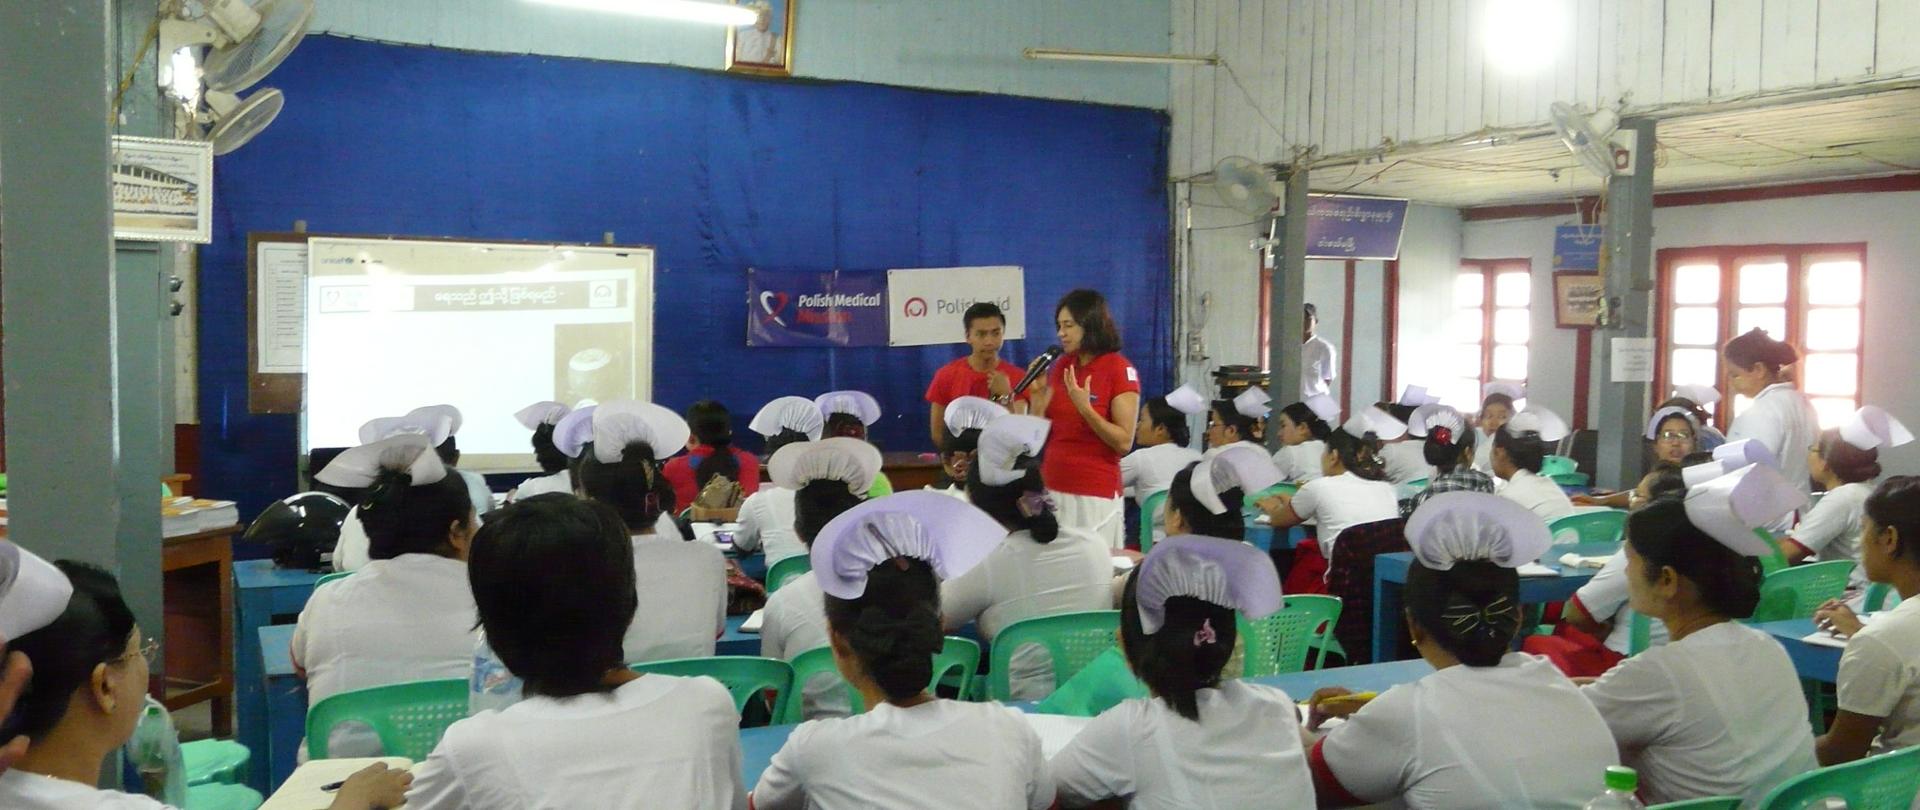 Pomoc medyczna dla Mjanmy - podczas szkolenia w sali pełnej pielęgniarek